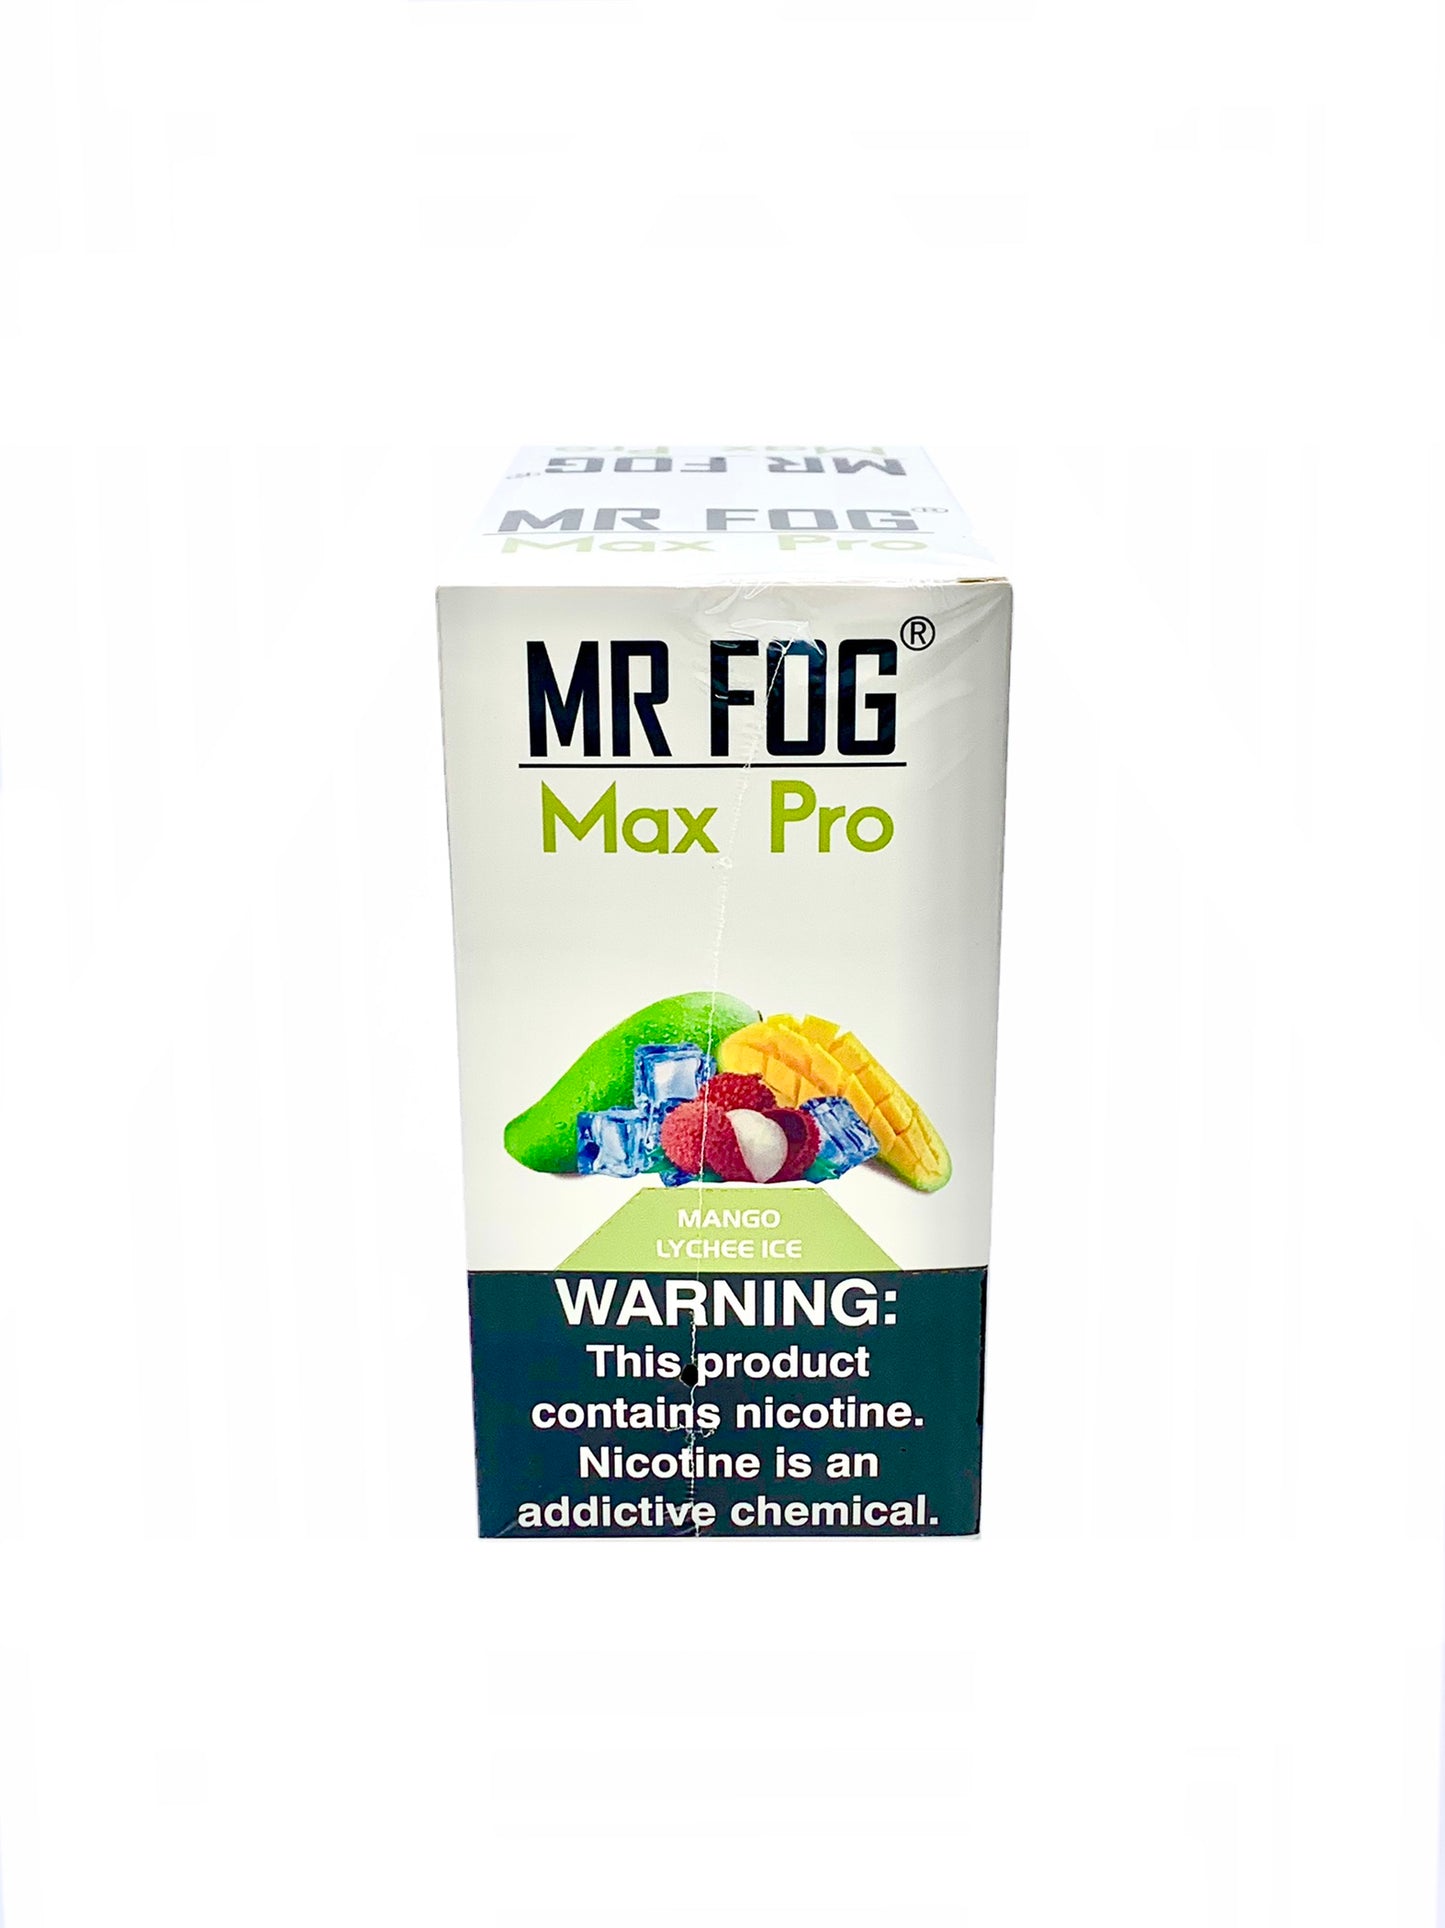 (10 unidades) Mr Fog Max Pro 1700 Puffs Mango Lychee Ice $4.5 c/u